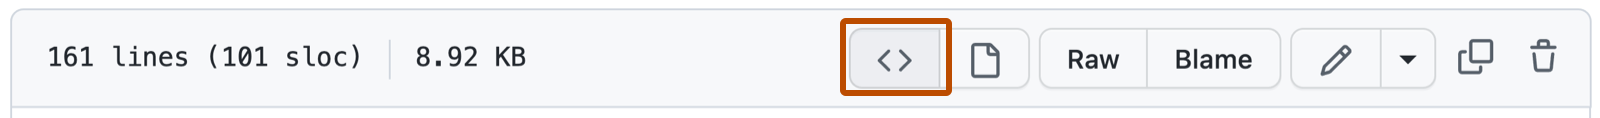 Capture d’écran d’un fichier Markdown dans un dépôt GitHub montrant les options d’interaction avec le fichier. Le bouton permettant d’afficher l’objet blob source est délimité en orange foncé.